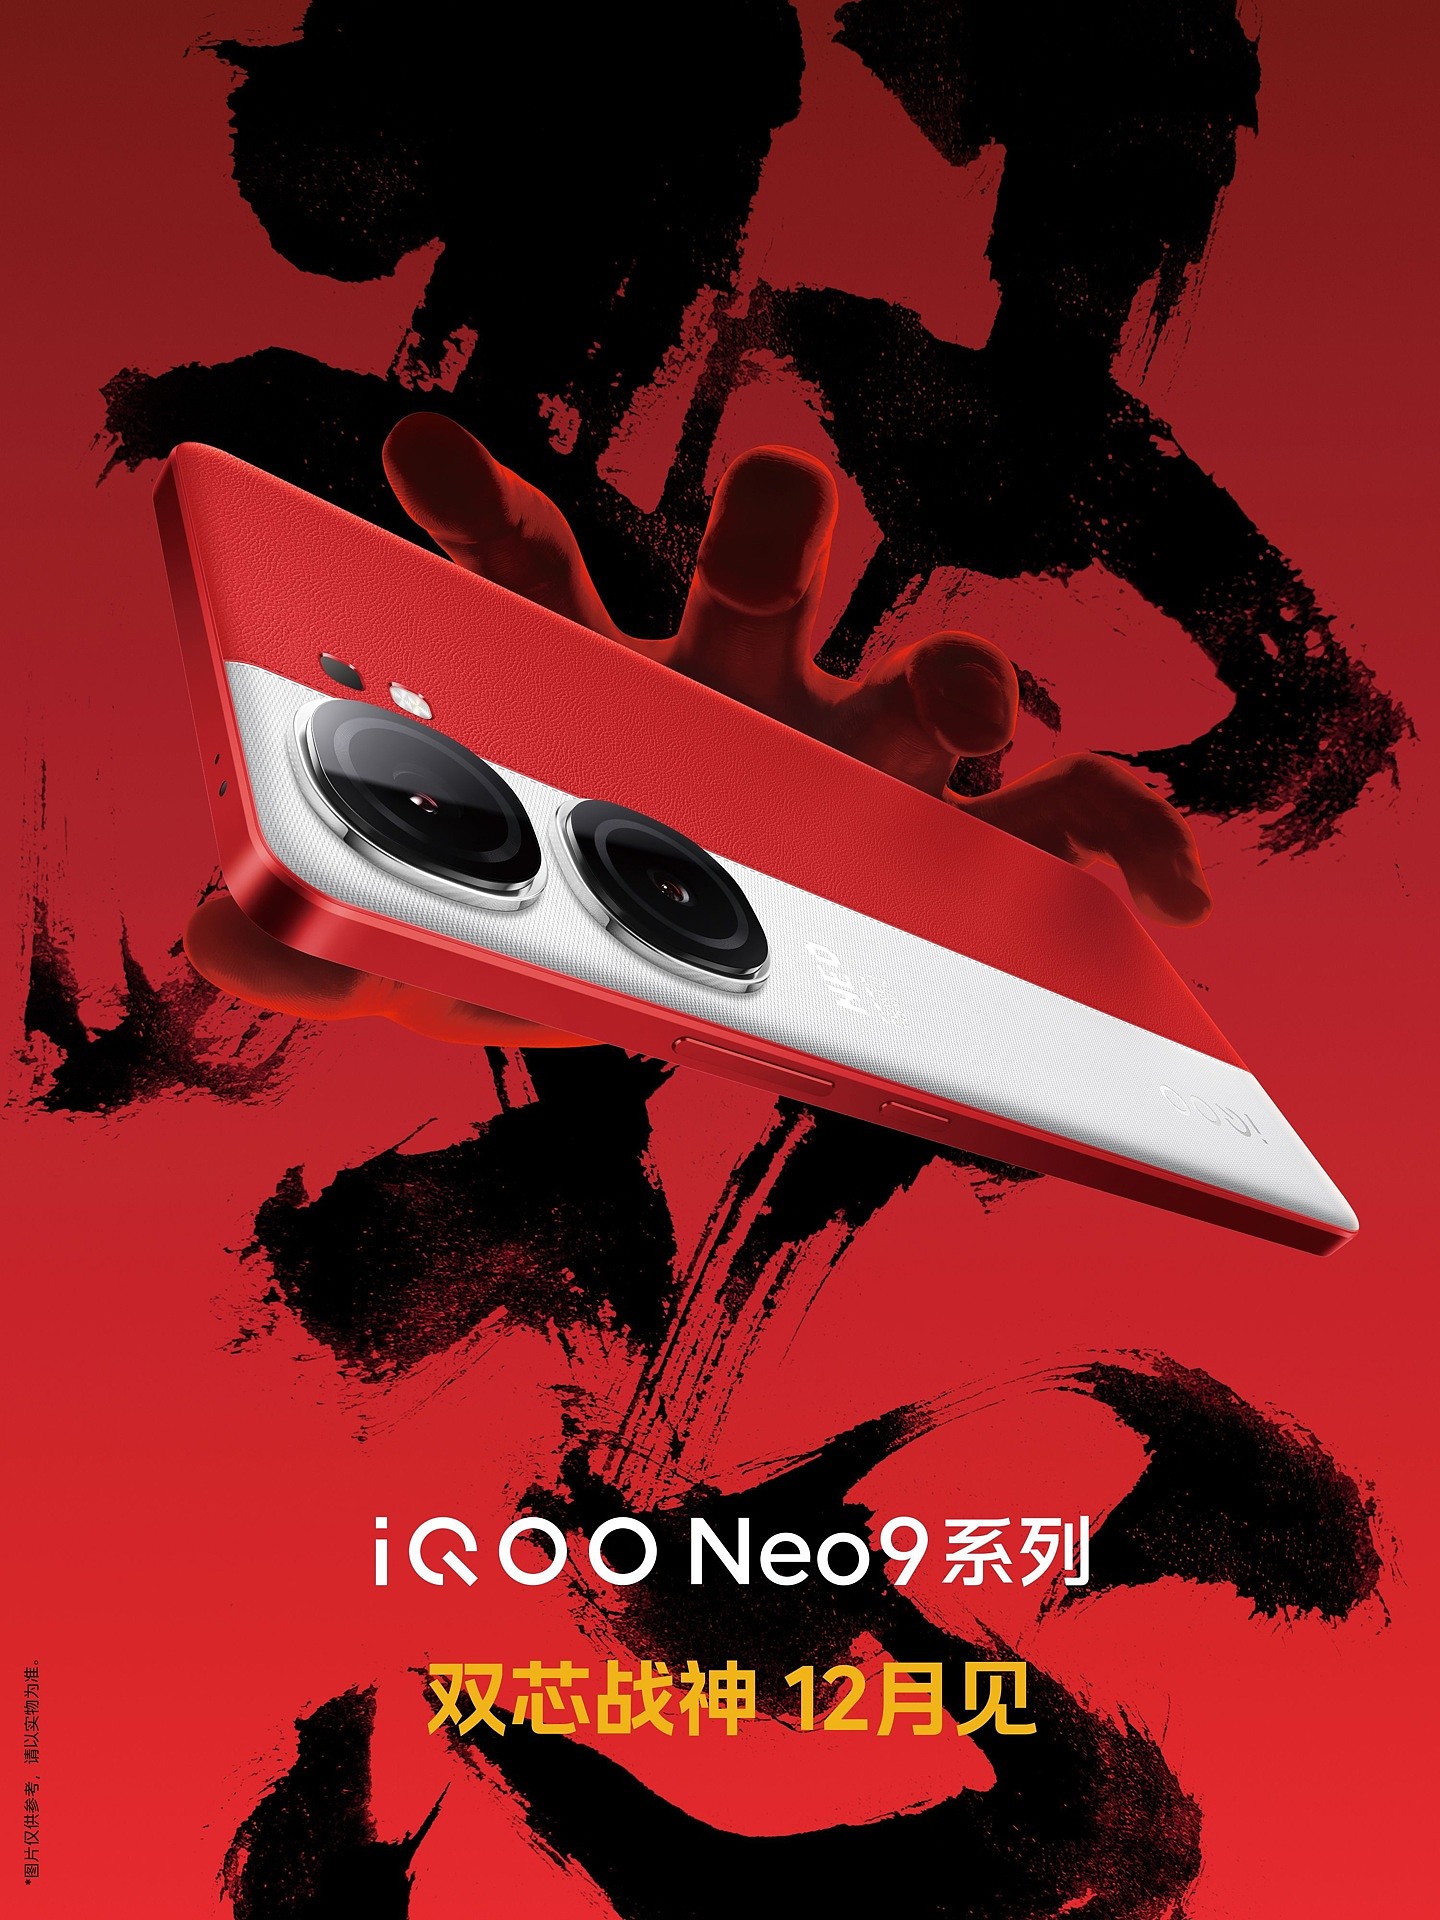 iQOO Neo 9 手机官宣 12 月发布，采用红白撞色设计 - 1